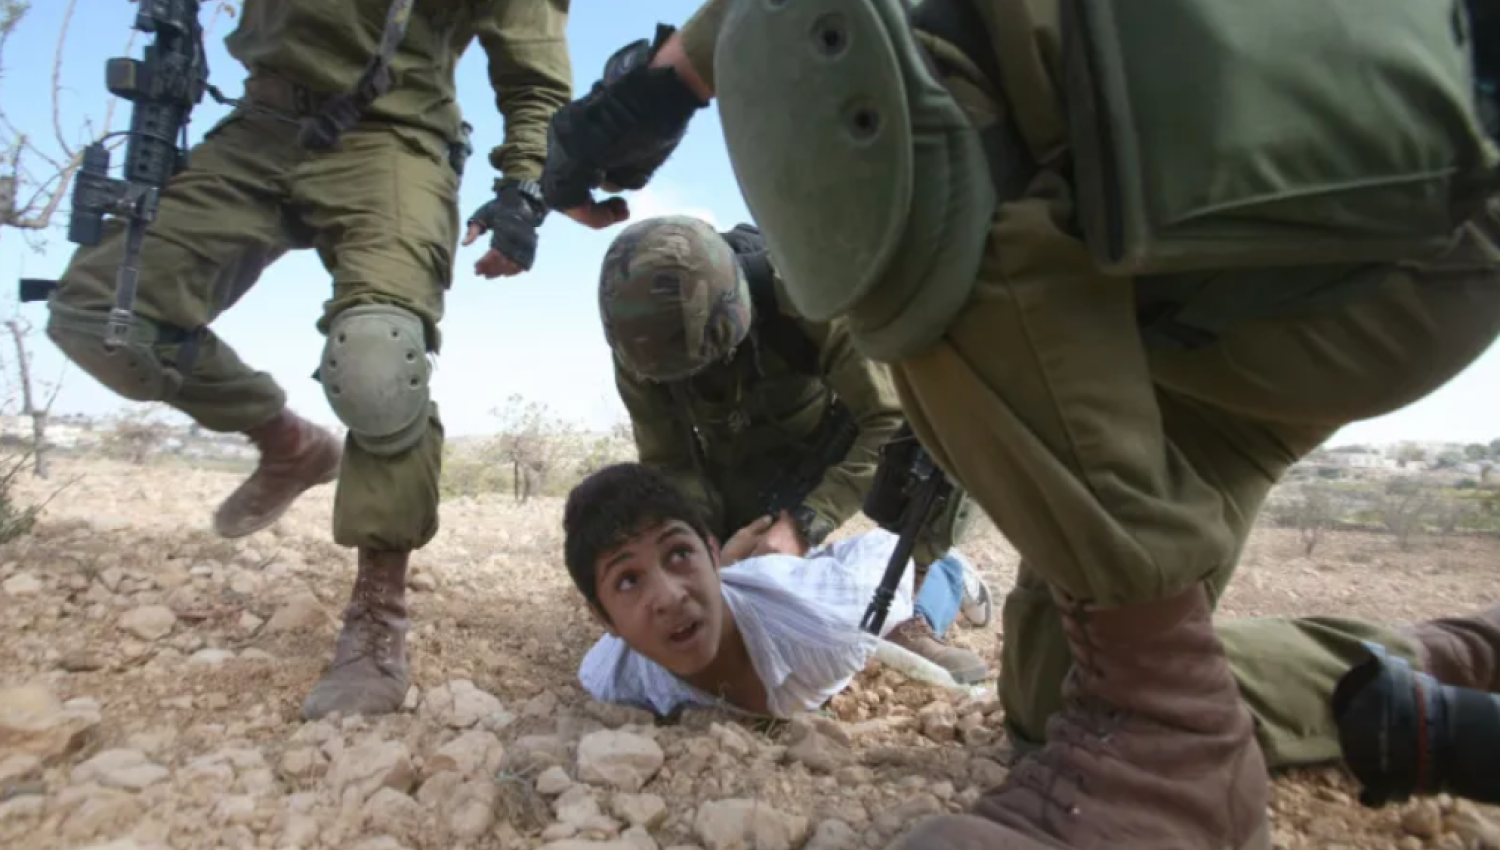 مجلة تايم: هذا ما يواجهه الأطفال الفلسطينيون في السجون الإسرائيلية؟